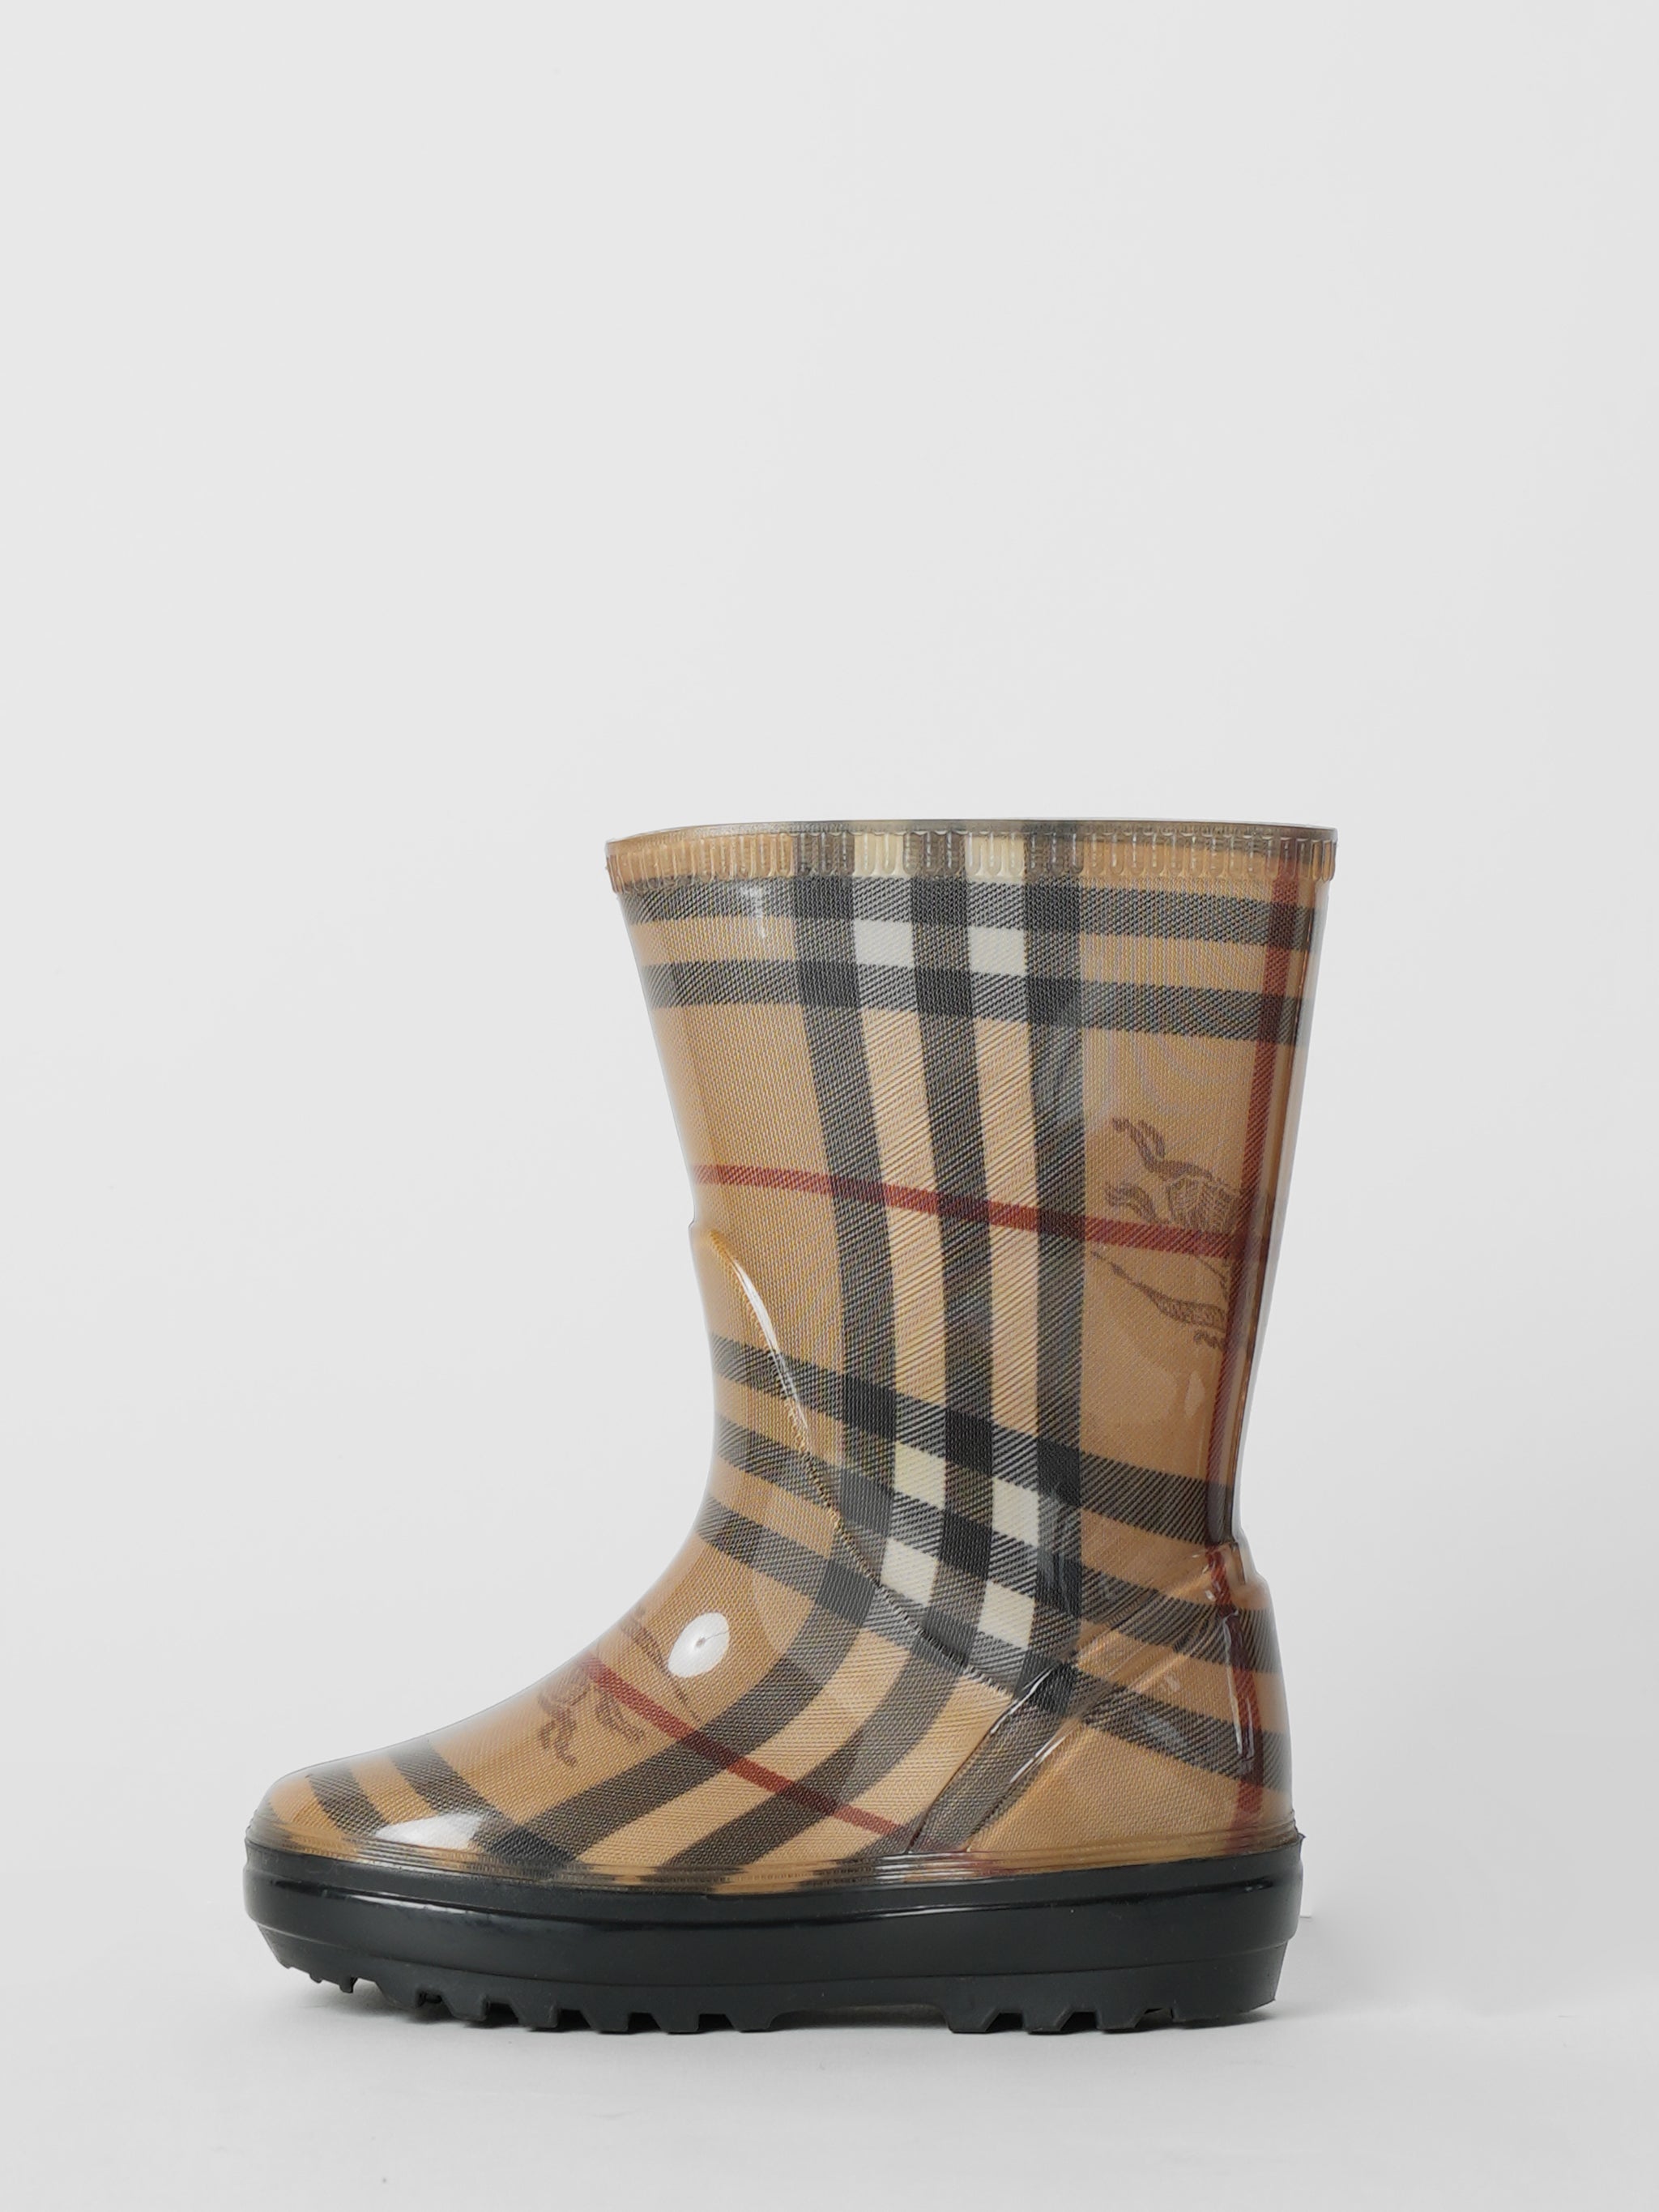 Burberry Rain Boots Nova Checks